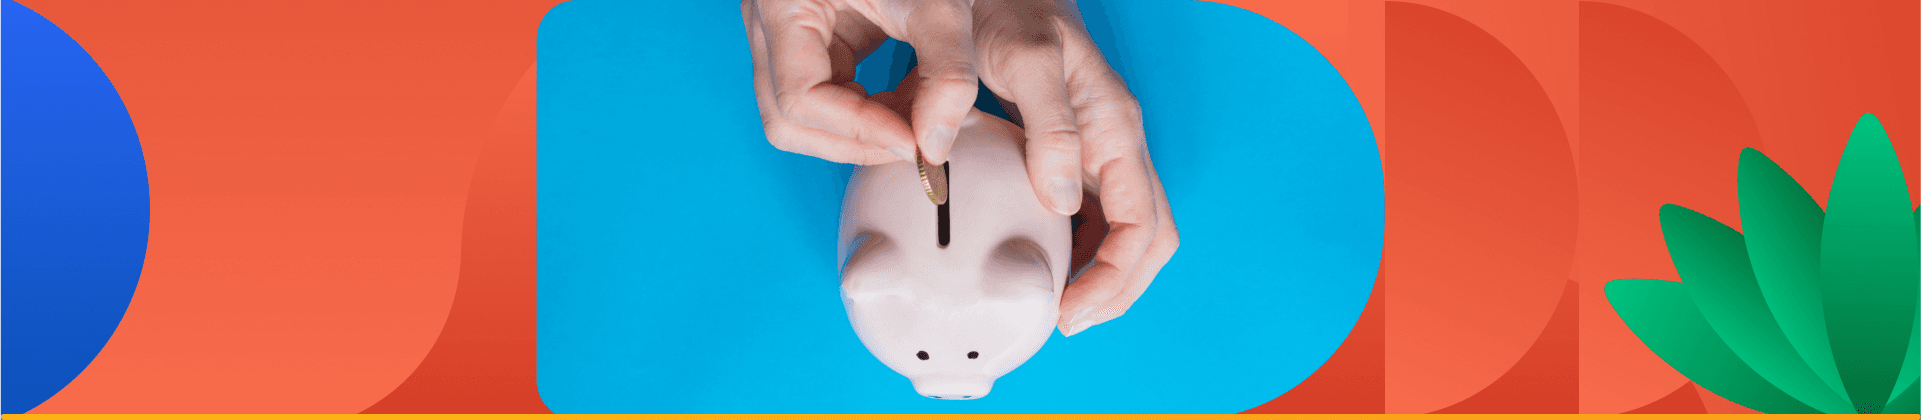 Como economizar dinheiro ganhando pouco pode parecer um desafio quando os recursos são limitados. Mas aqui apresentamos algumas dicas.